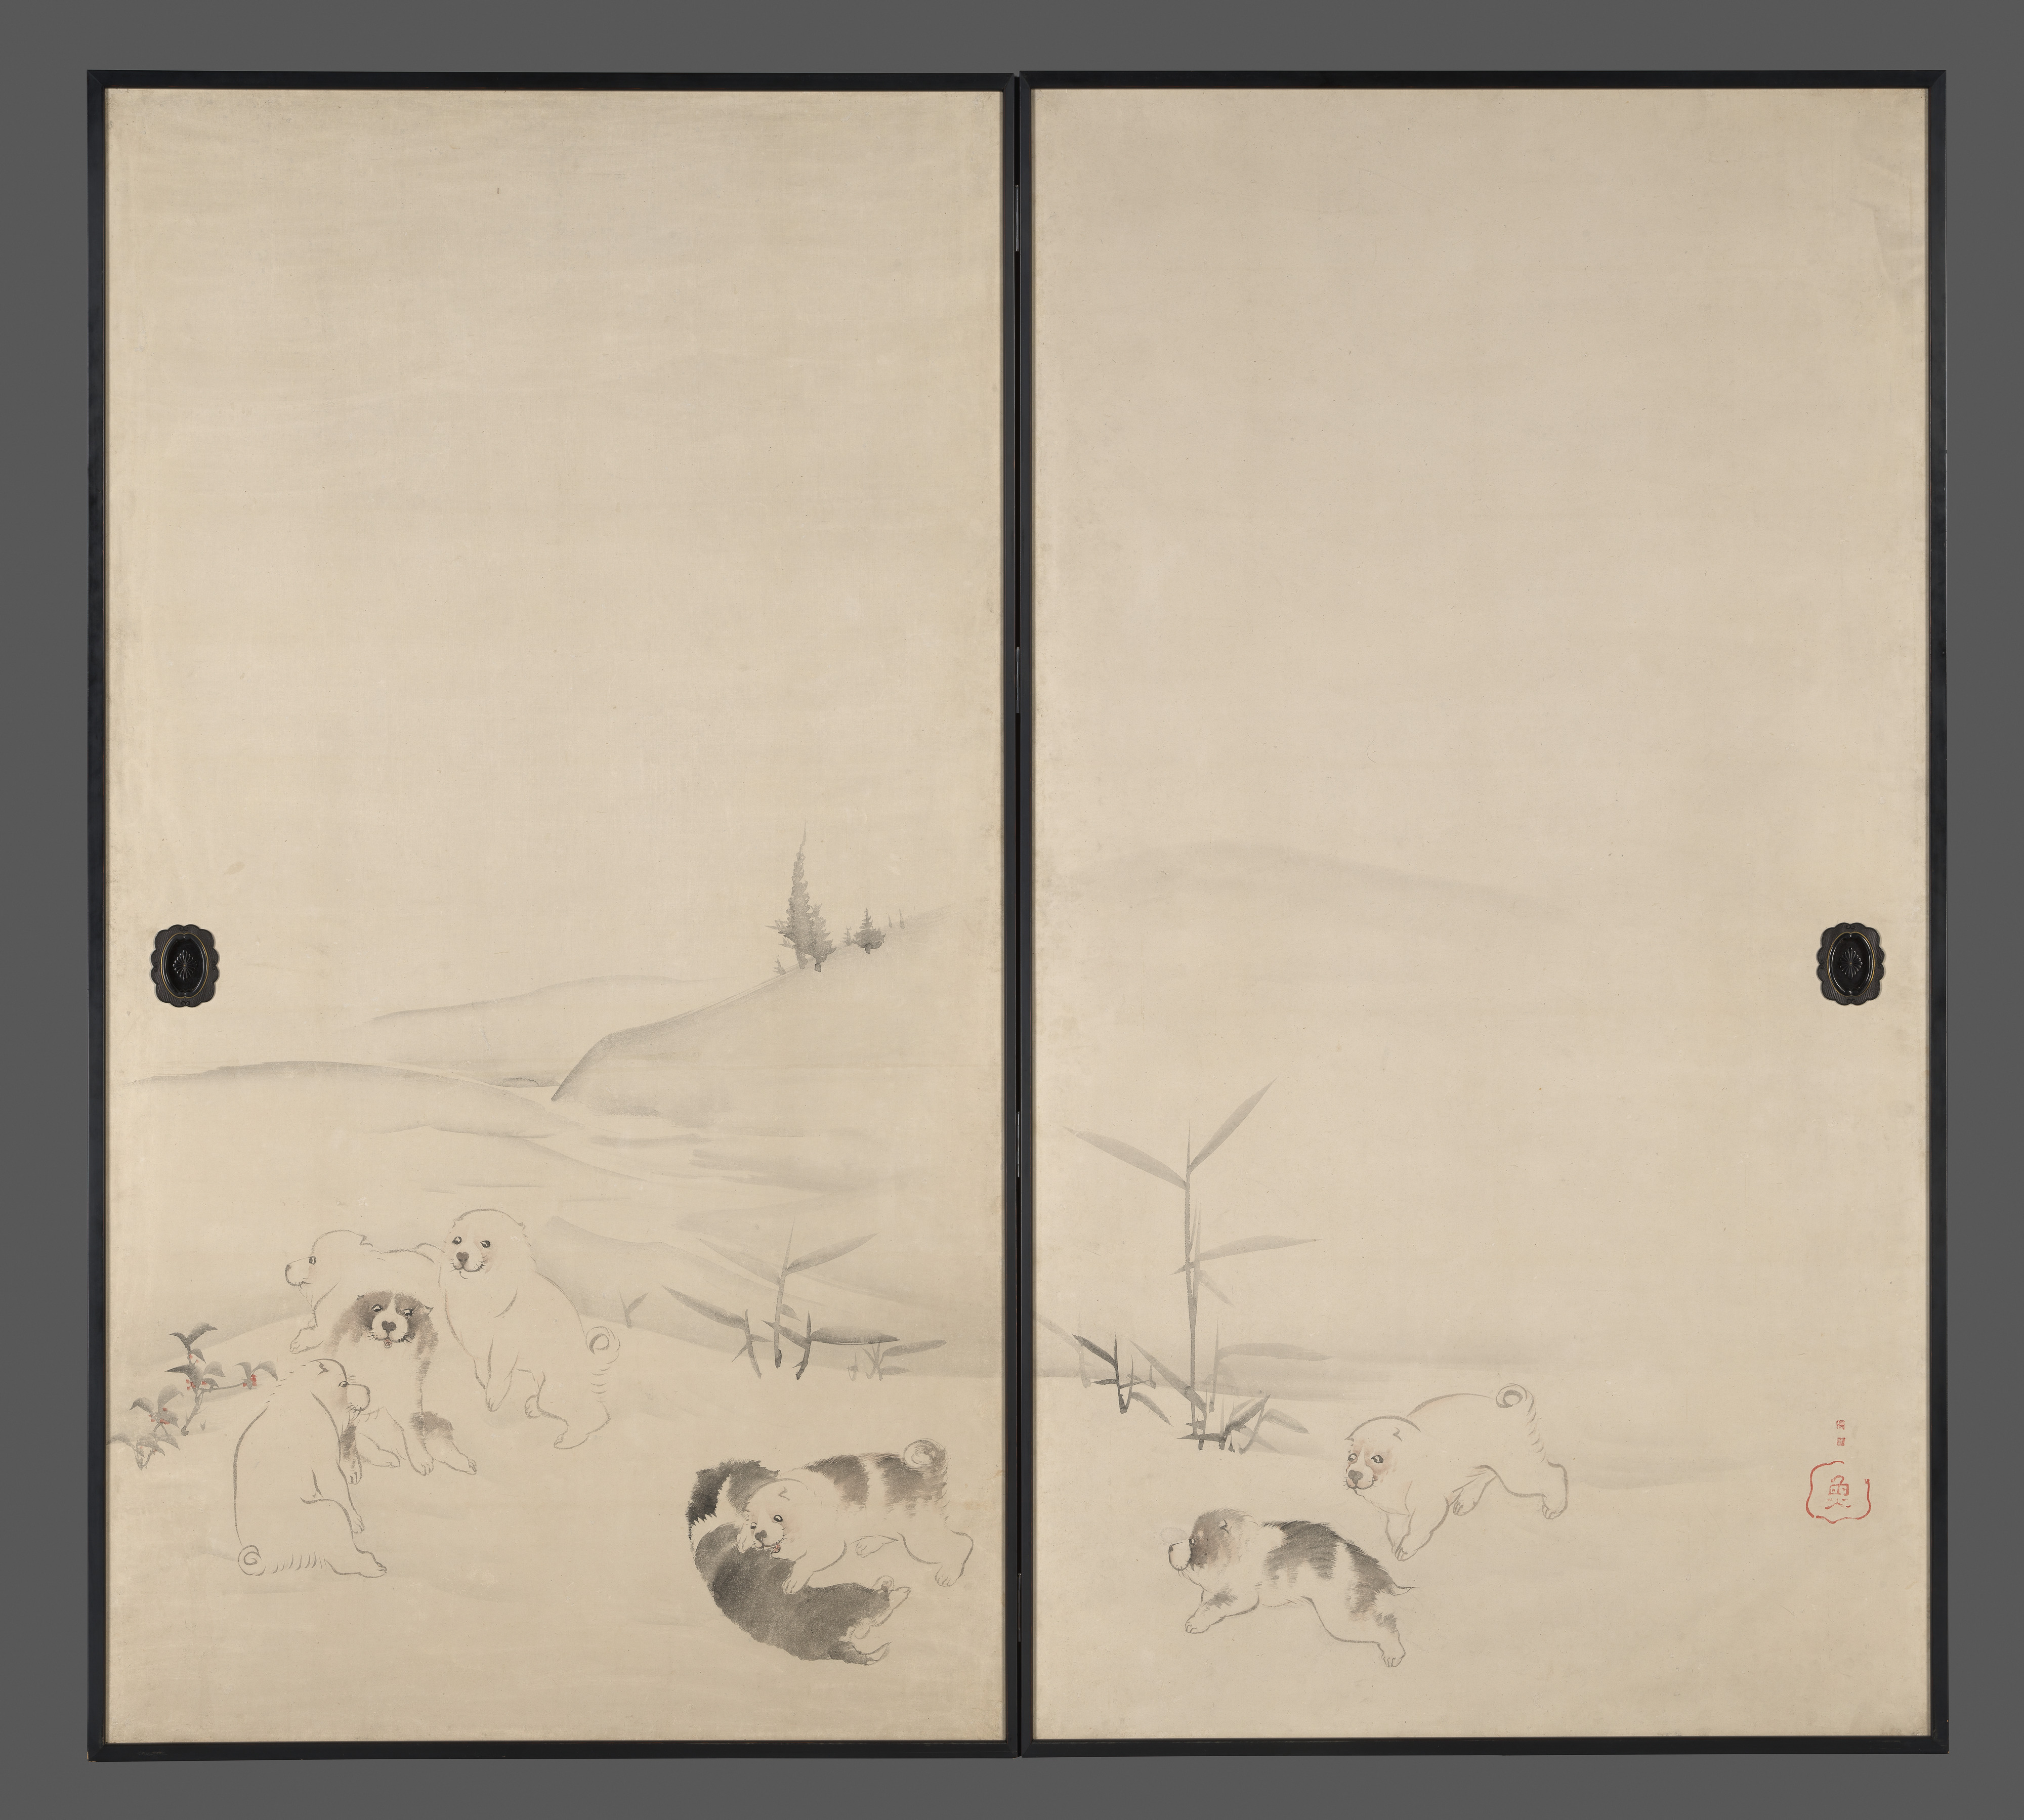 눈과 강아지(Puppies in the Snow, 雪狗子図襖) by Nagasawa Rosetsu - 1792–99 - 168.7 cm × 183 cm 